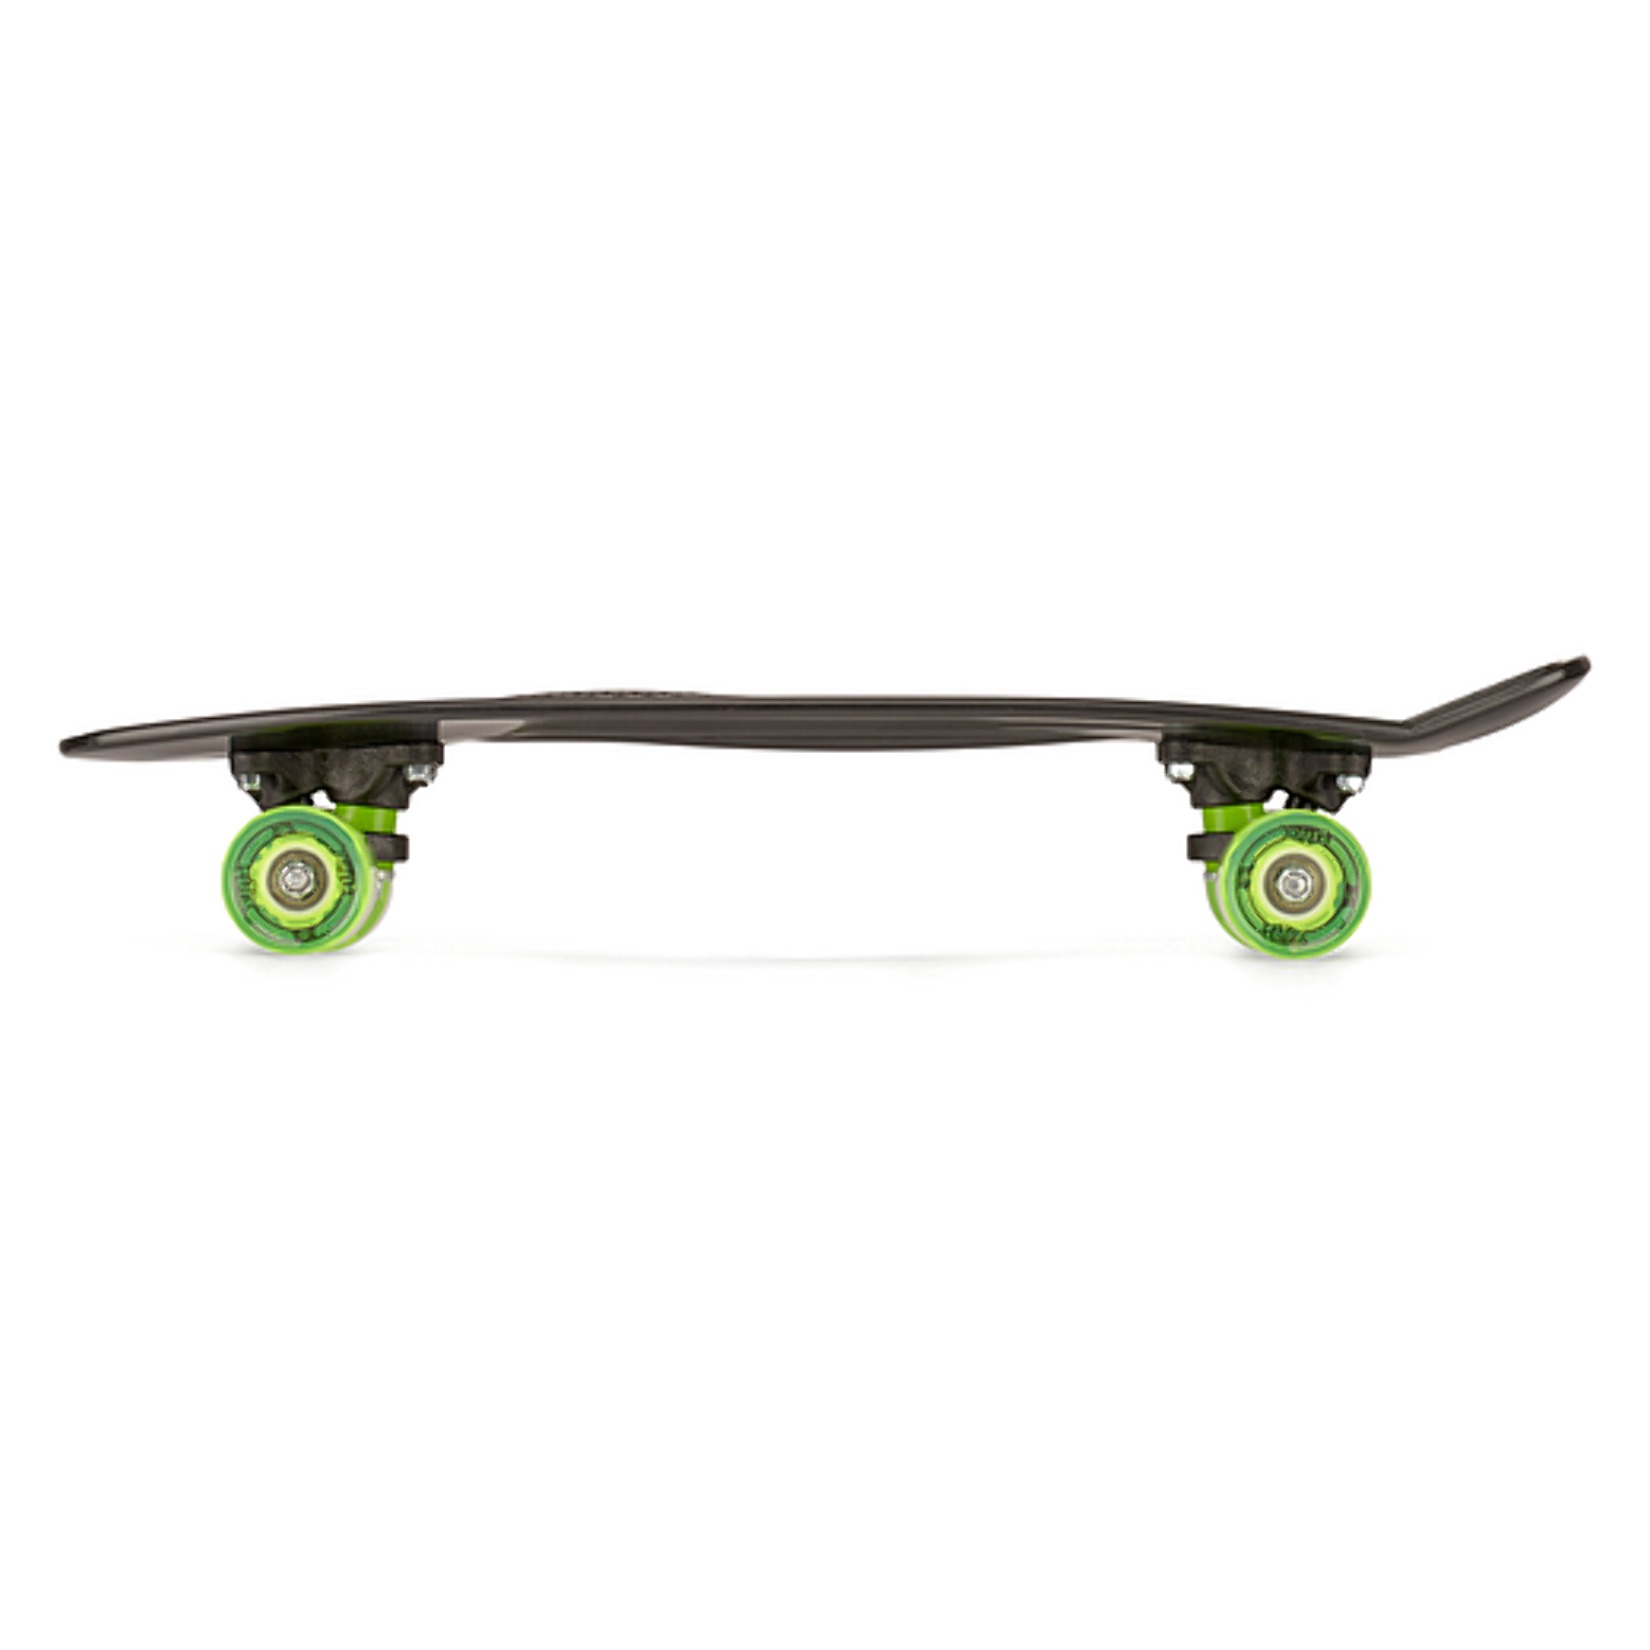 Xootz PP Skateboard LED 22